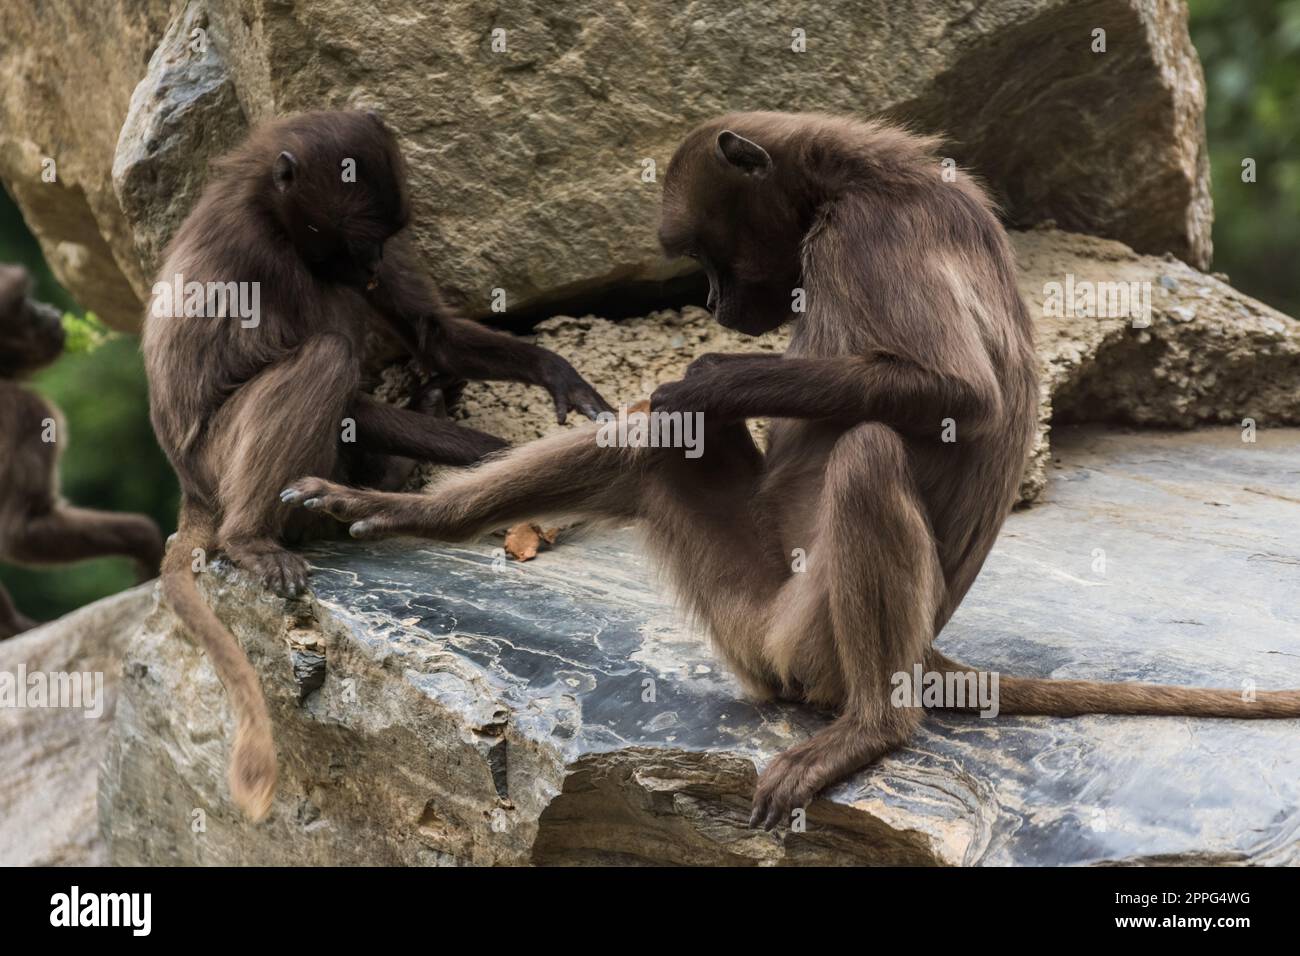 two dear gelada monkeys do body care on a rock Stock Photo